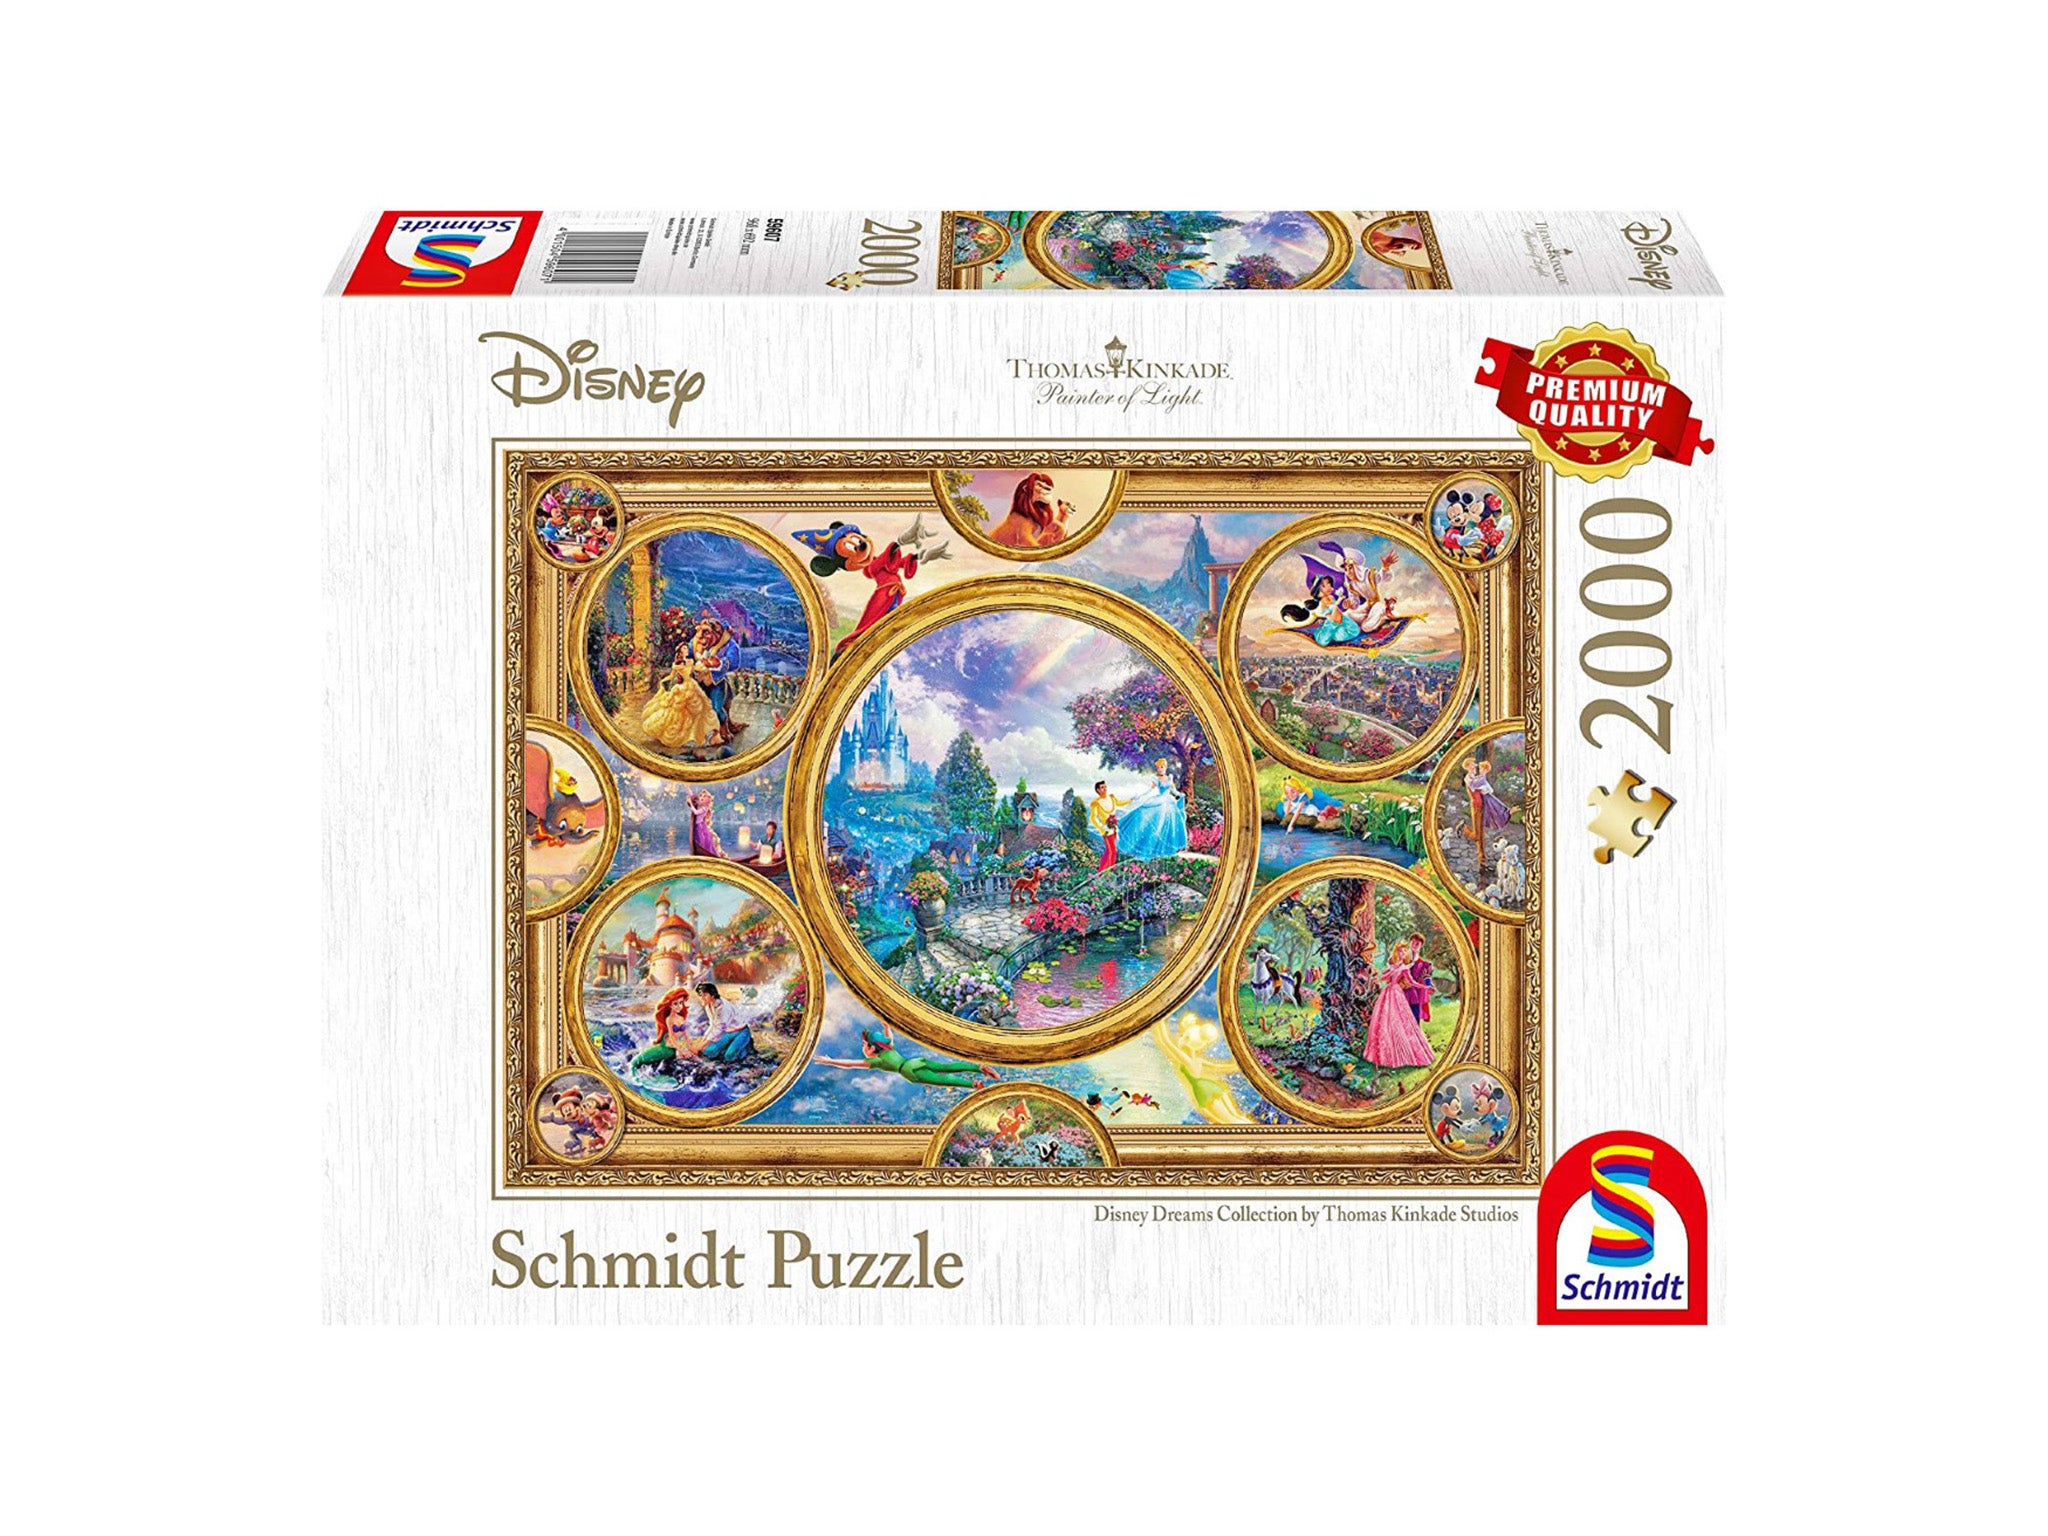 Disney dreams puzzle 2000 piece indybest.jpg